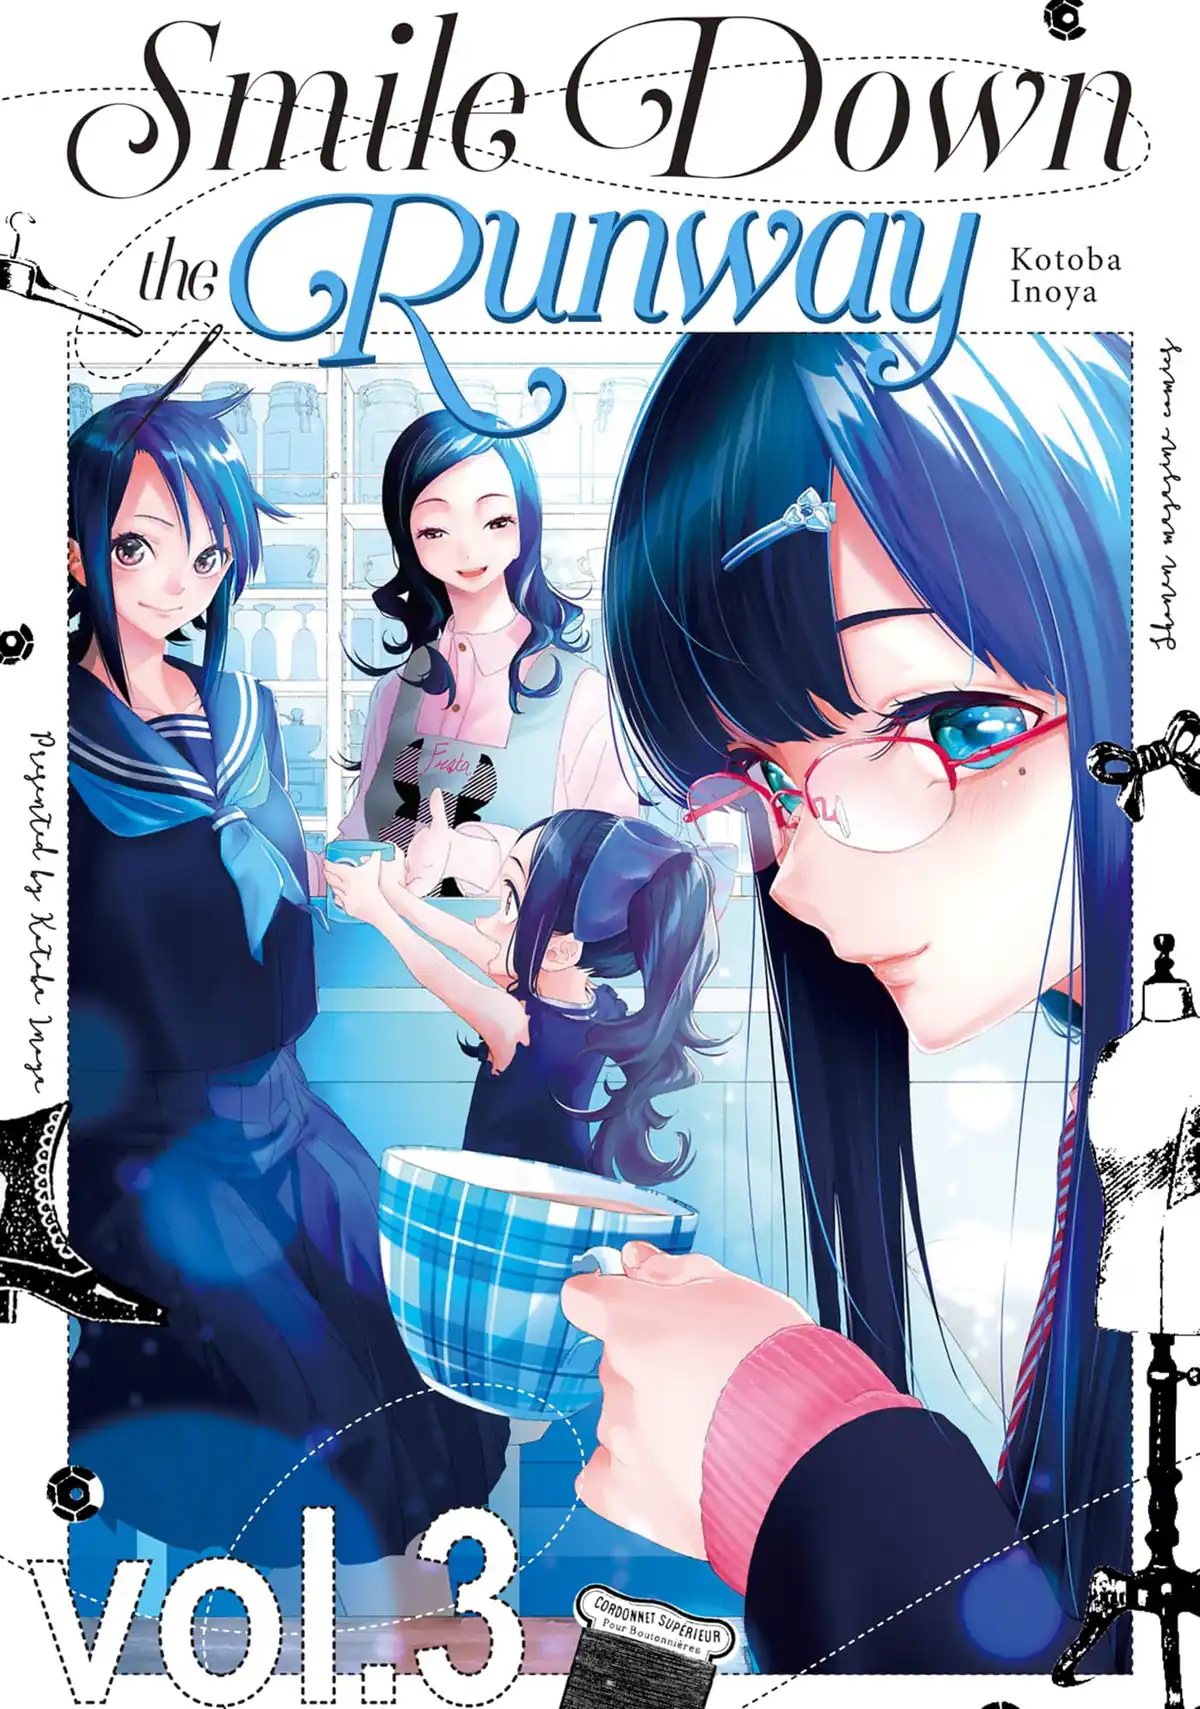 Runway de Waratte Manga - Chapter 106 - Manga Rock Team - Read Manga Online  For Free